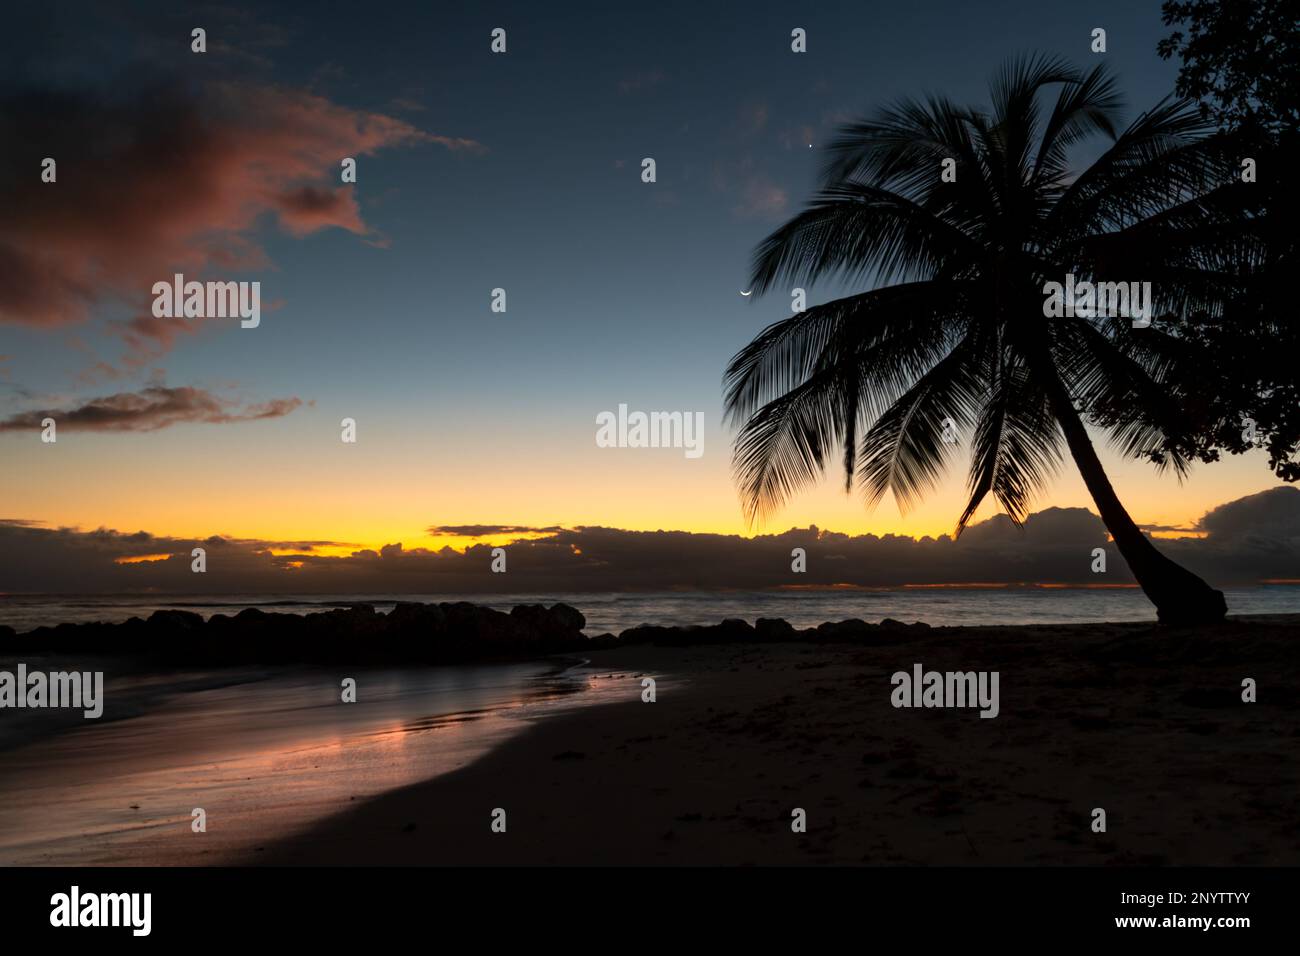 Coucher de soleil pittoresque sur une plage tropicale à la Barbade avec silhouette de palmier et lune dans le ciel. Banque D'Images